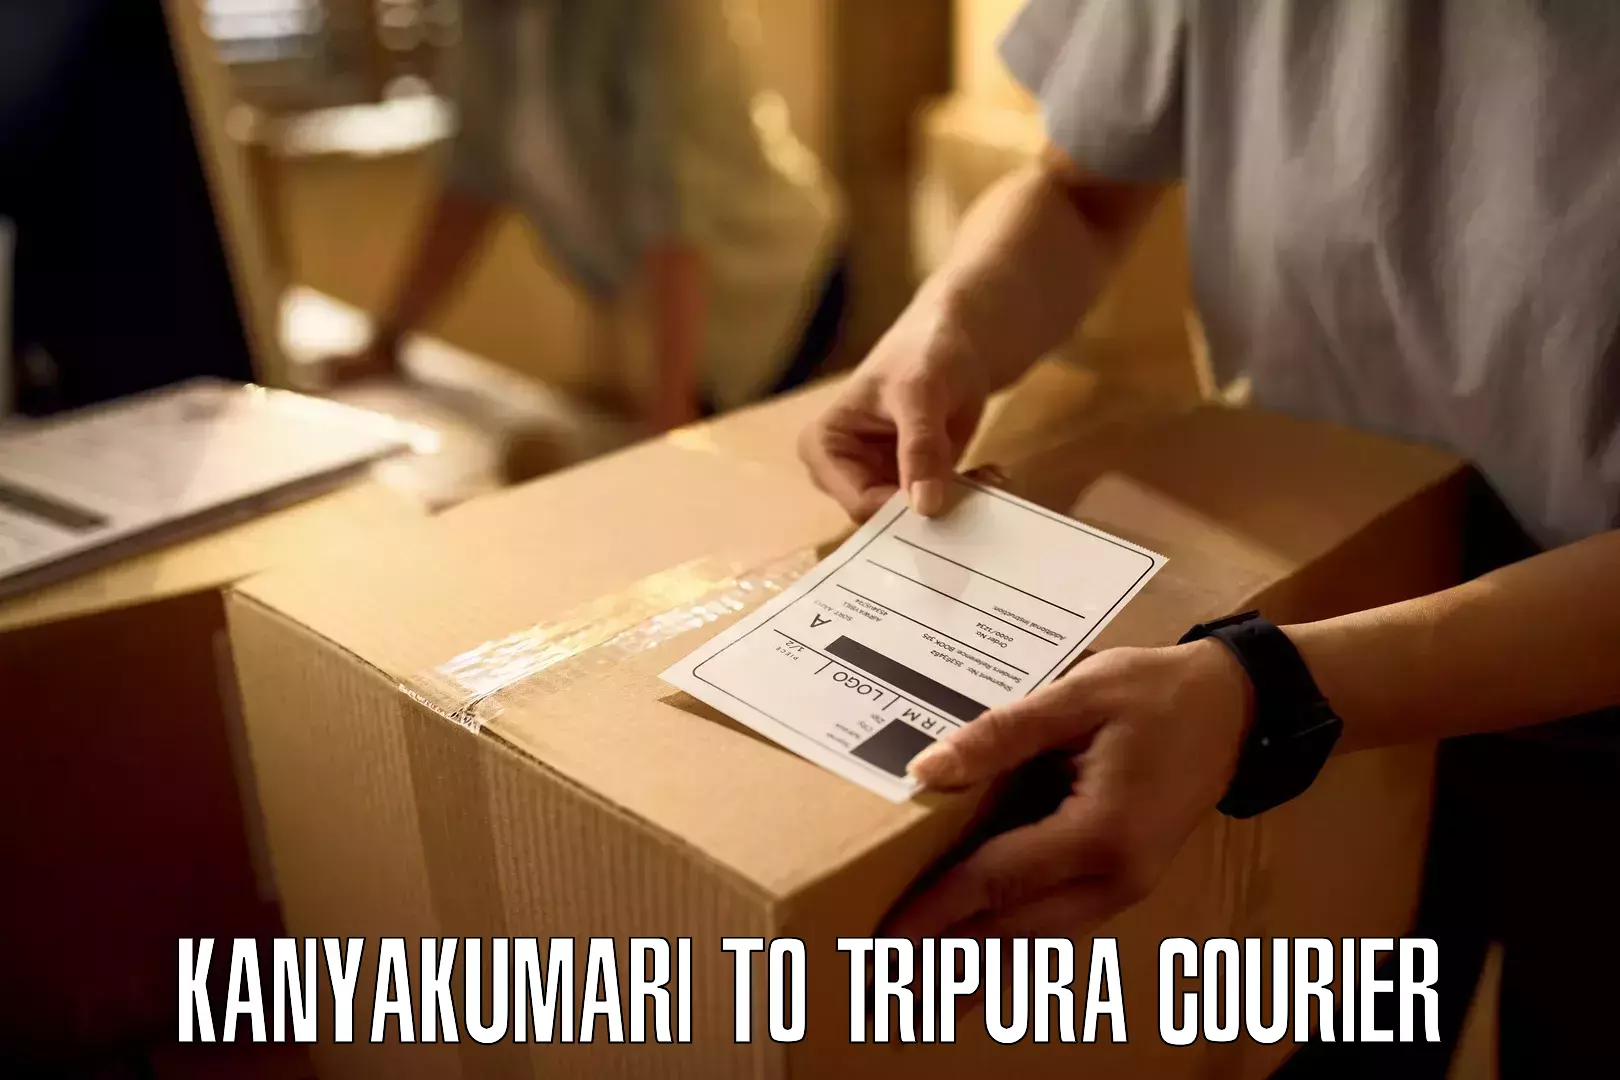 Professional courier handling Kanyakumari to Tripura